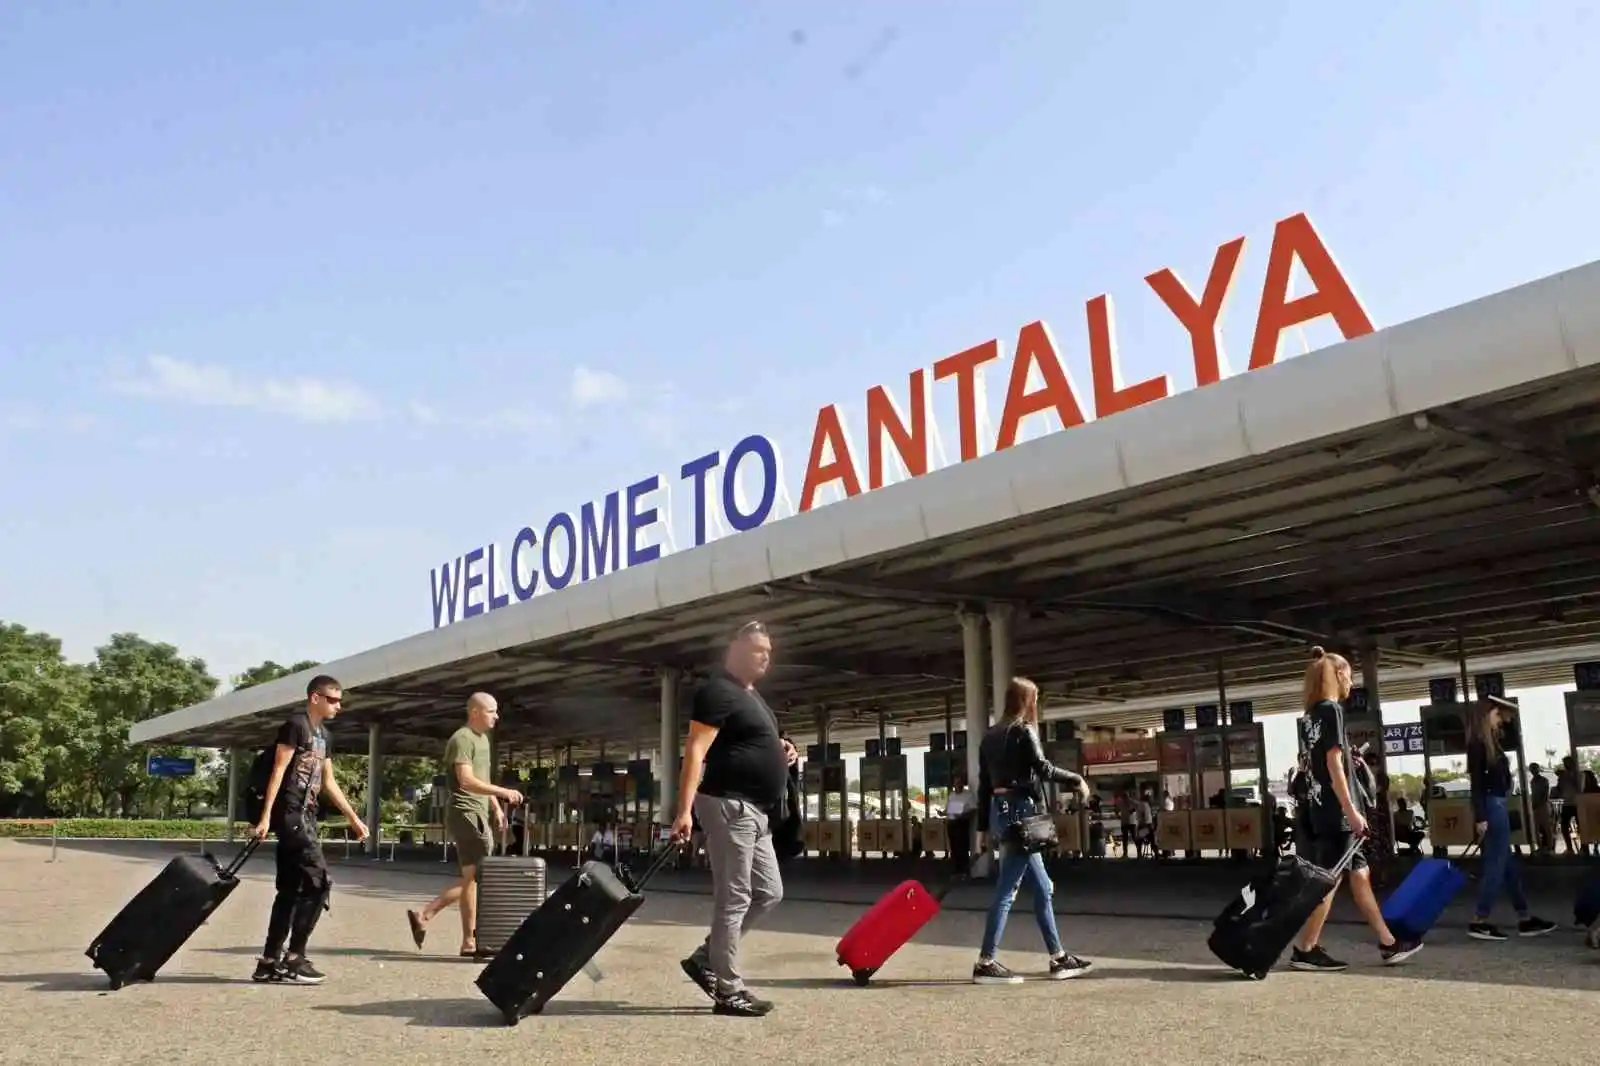 Seferberlik sonrası Rusya'dan Antalya'ya gelen günlük 80 uçağa 3-4 sefer ilave edilmiş durumda
